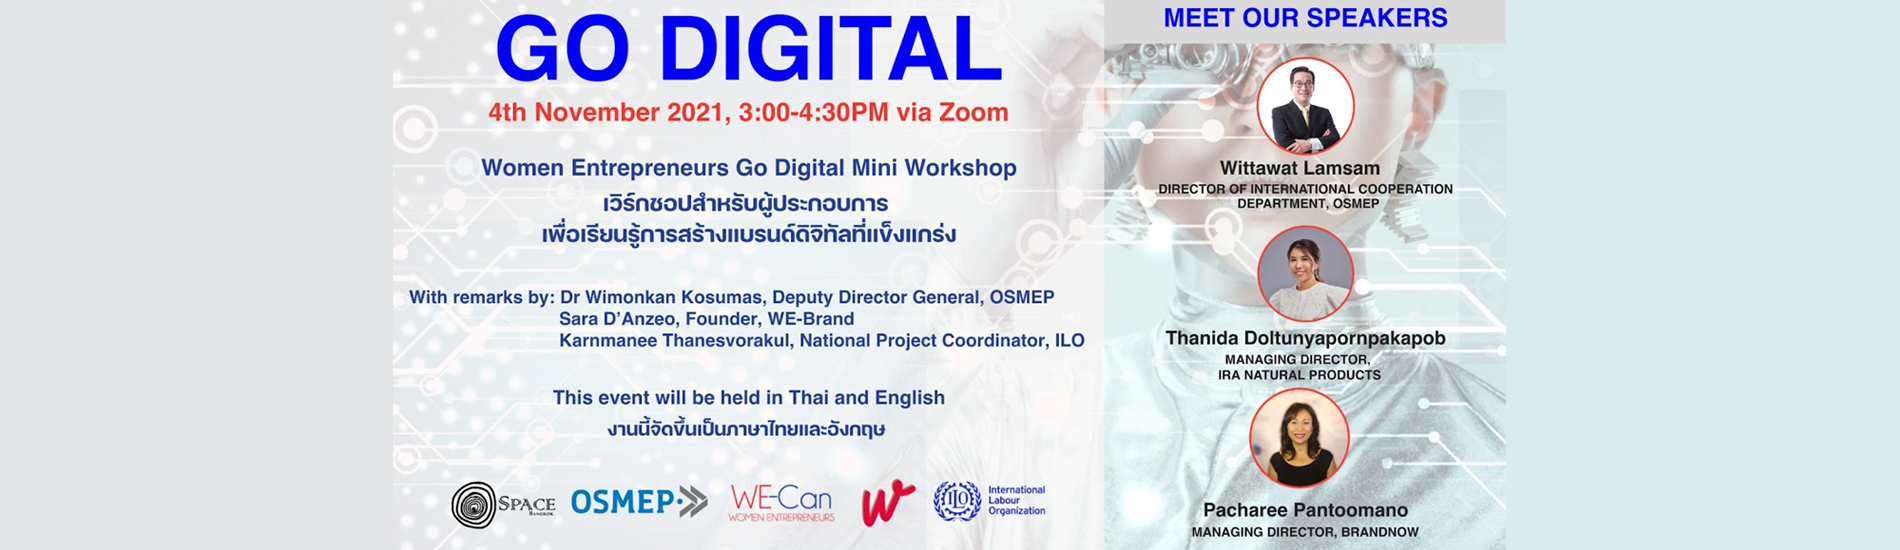 Webinar: Go Digital Mini Workshop for Women-led Businesses